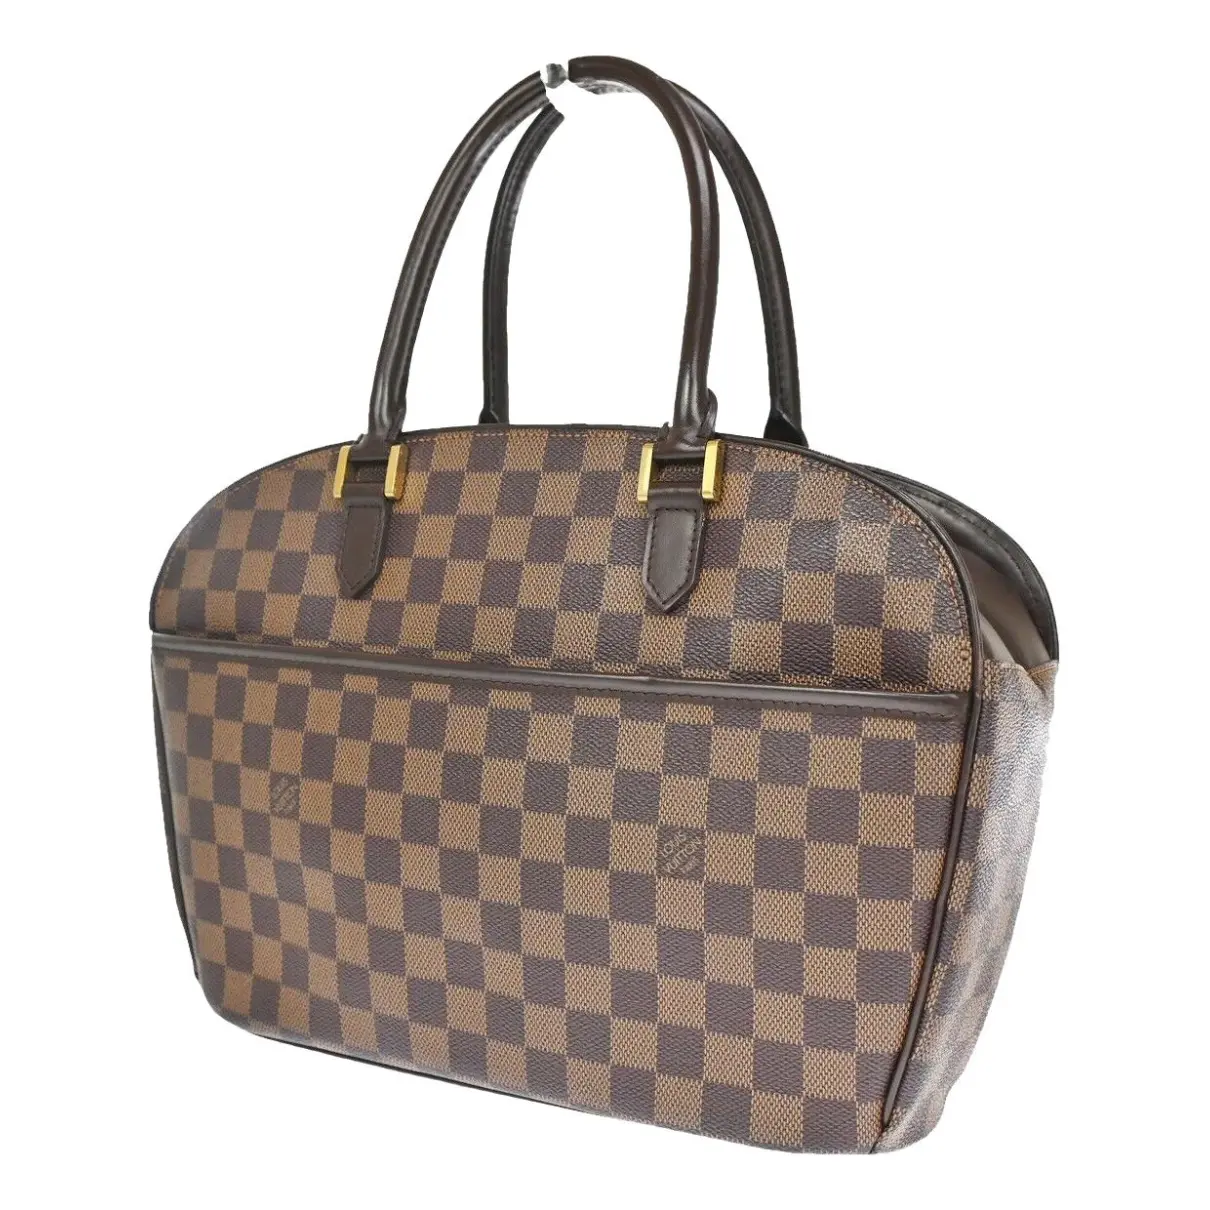 Sarria handbag Louis Vuitton